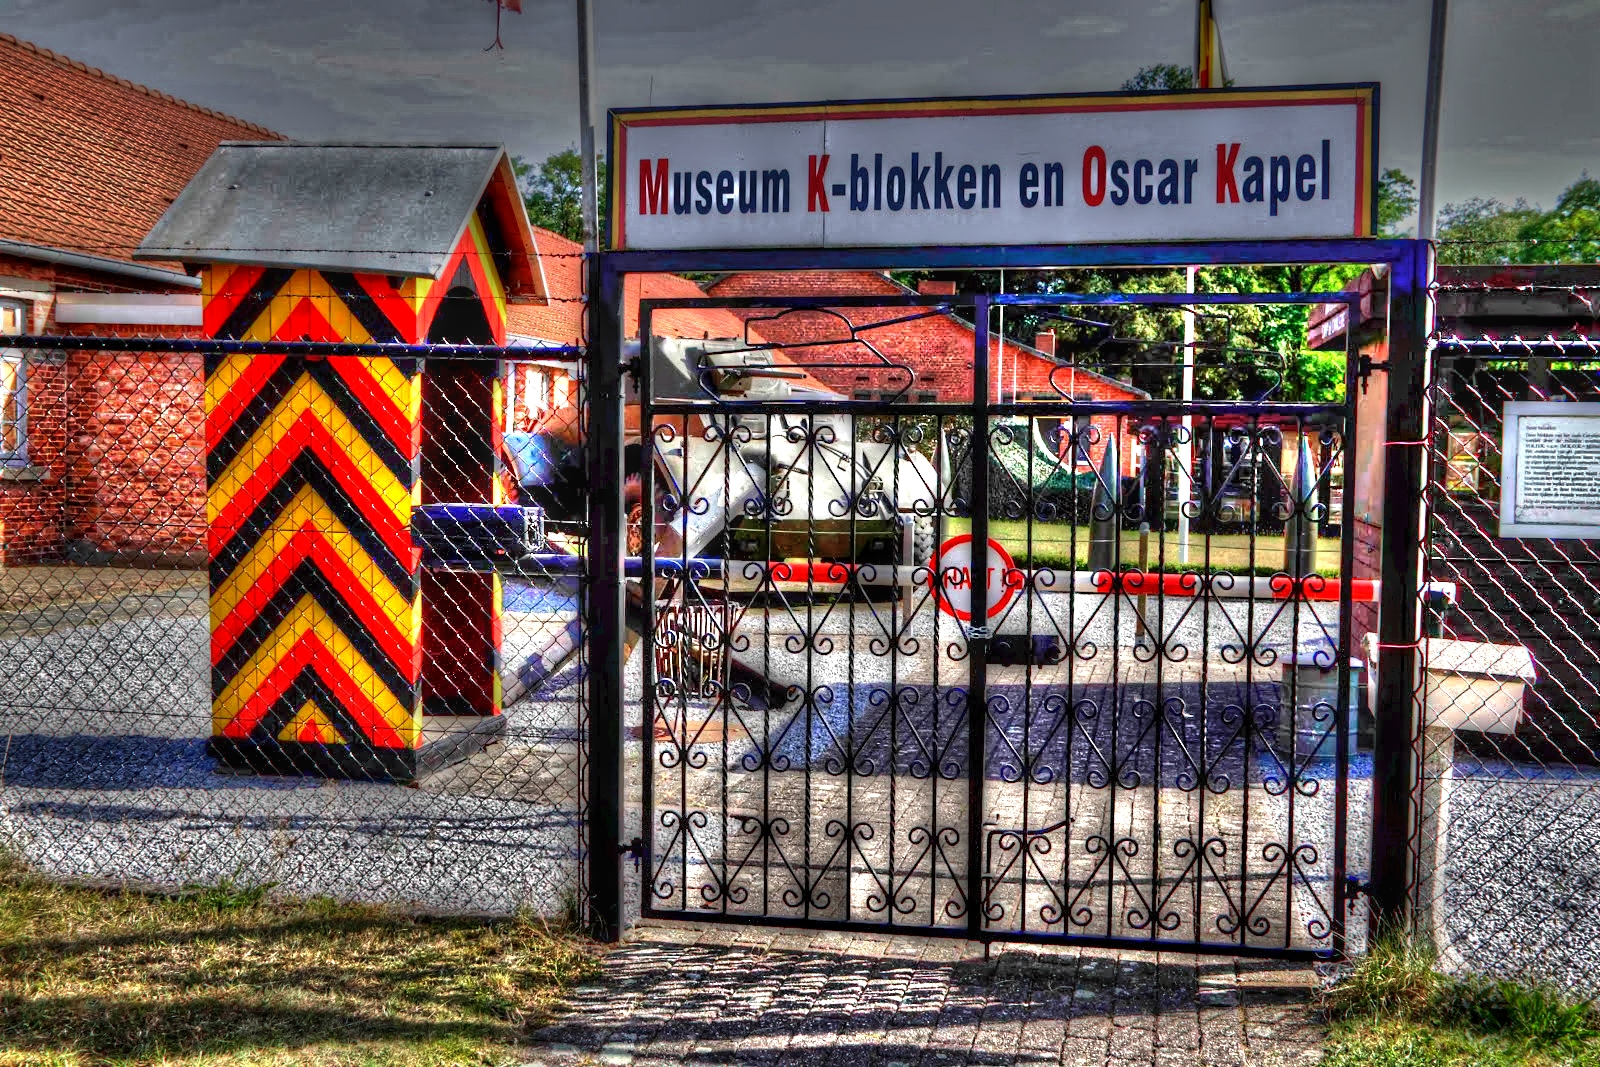 Museum K-blokken en de Oscarkapel (MKOK)